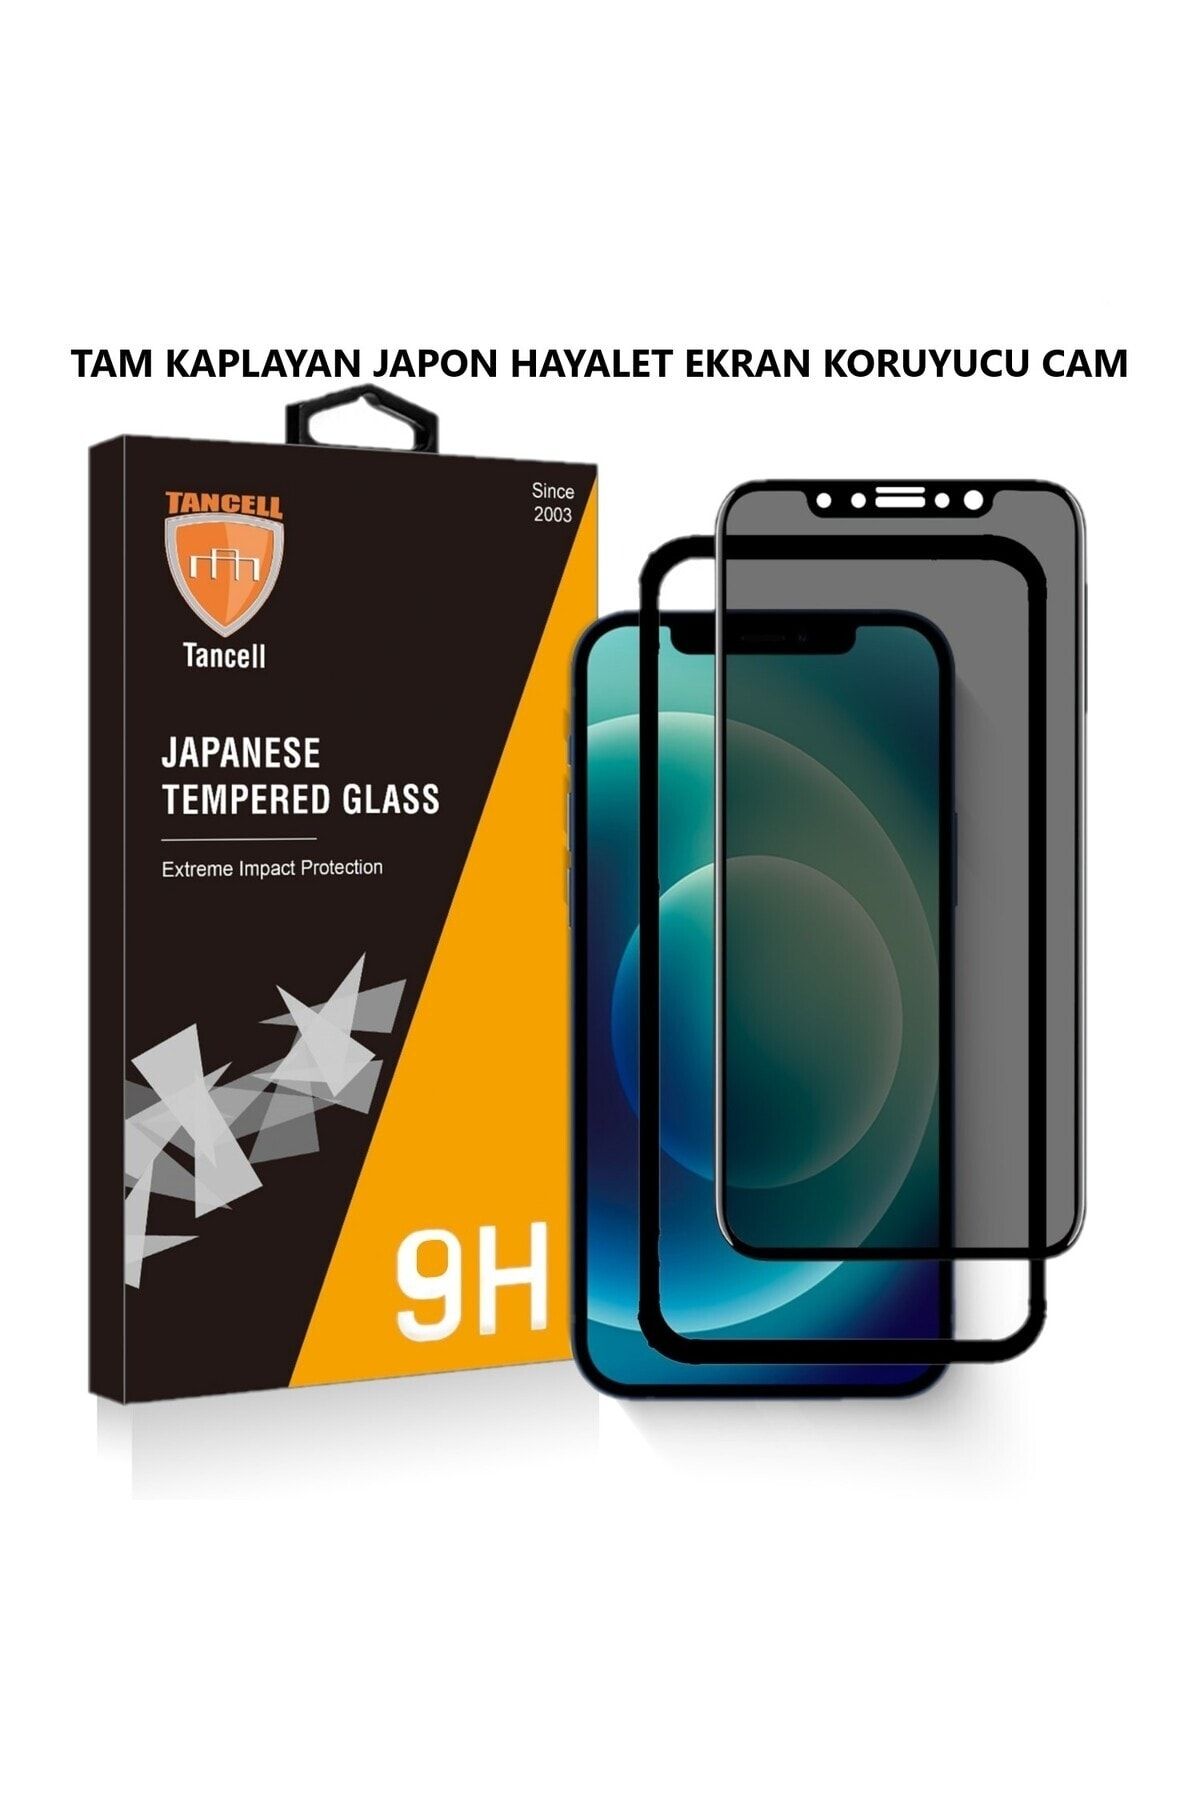 TANCELL Iphone 14 Plus Uyumlu Hayalet Ekran Koruyucu Tam Kaplayan Japon Kırılmaz Cam 6,7 Inc (2 ADET)